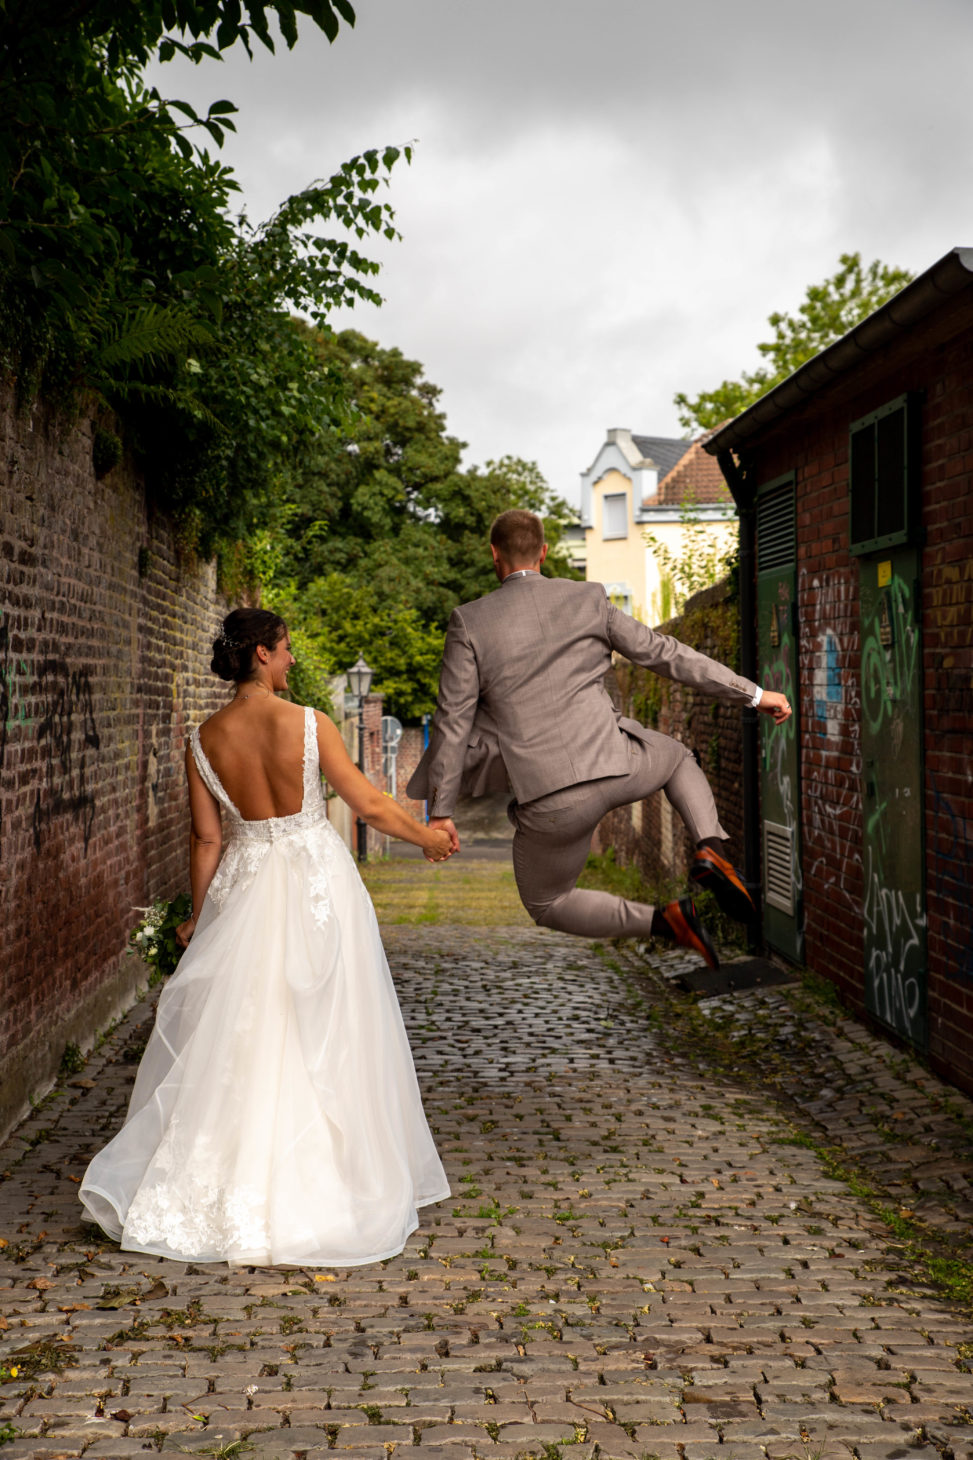 Hochzeitsfotografie, derbesteaugenblick.de